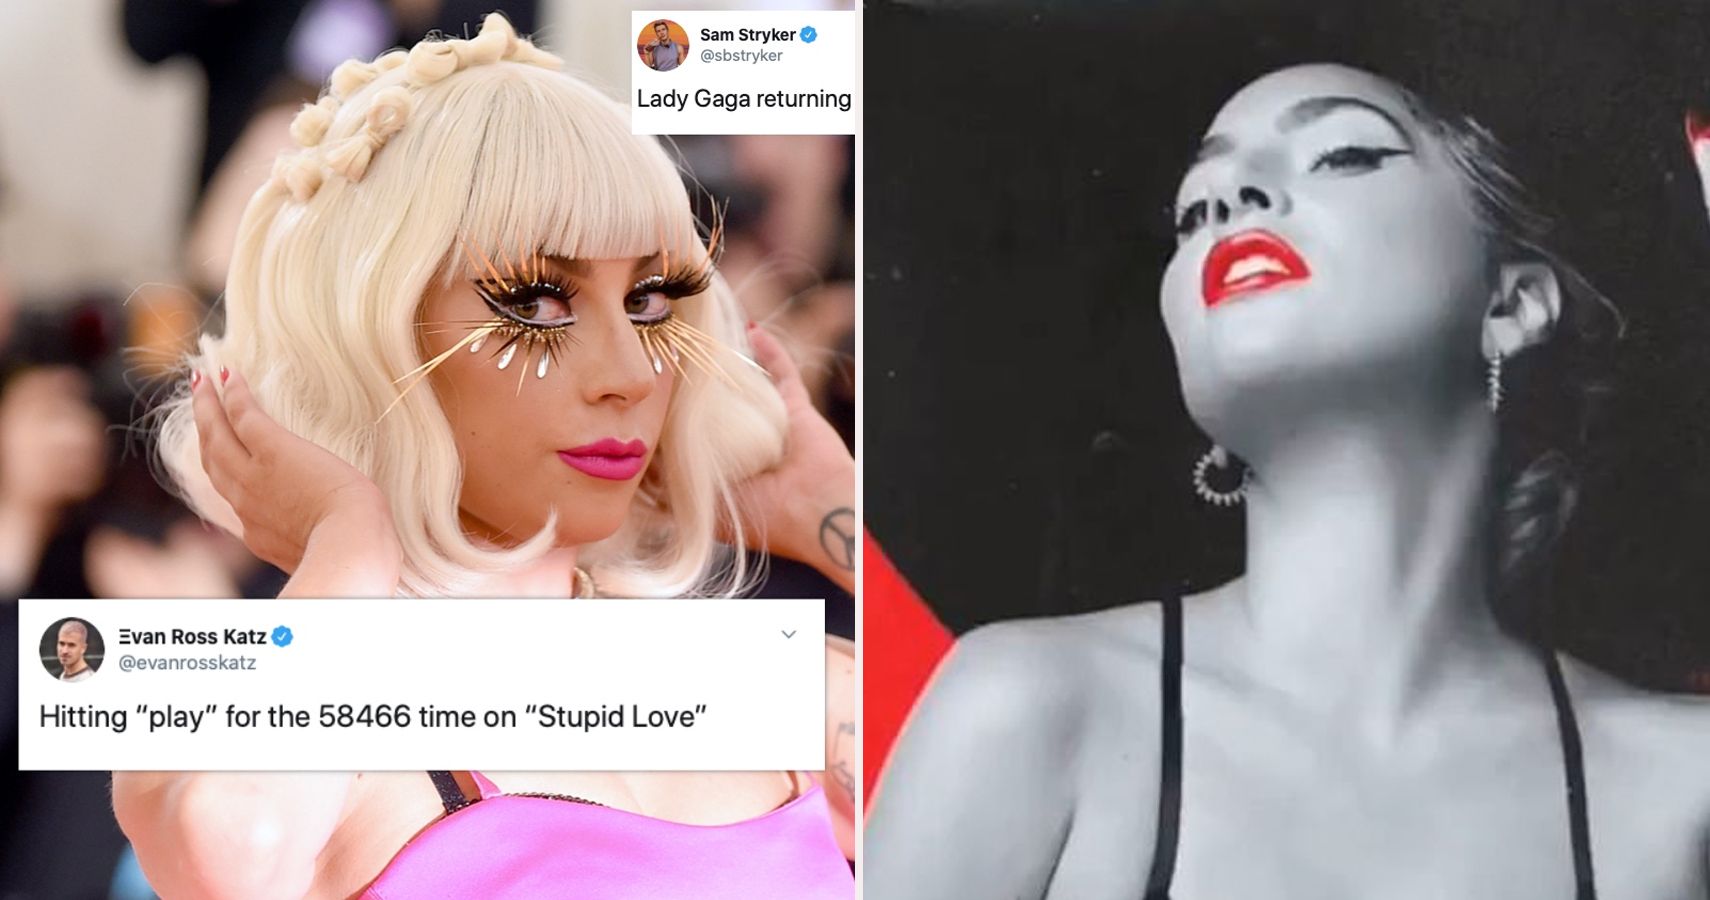 Shutterstock chama Lady Gaga de hipócrita depois de vazamentos de “amor estúpido”